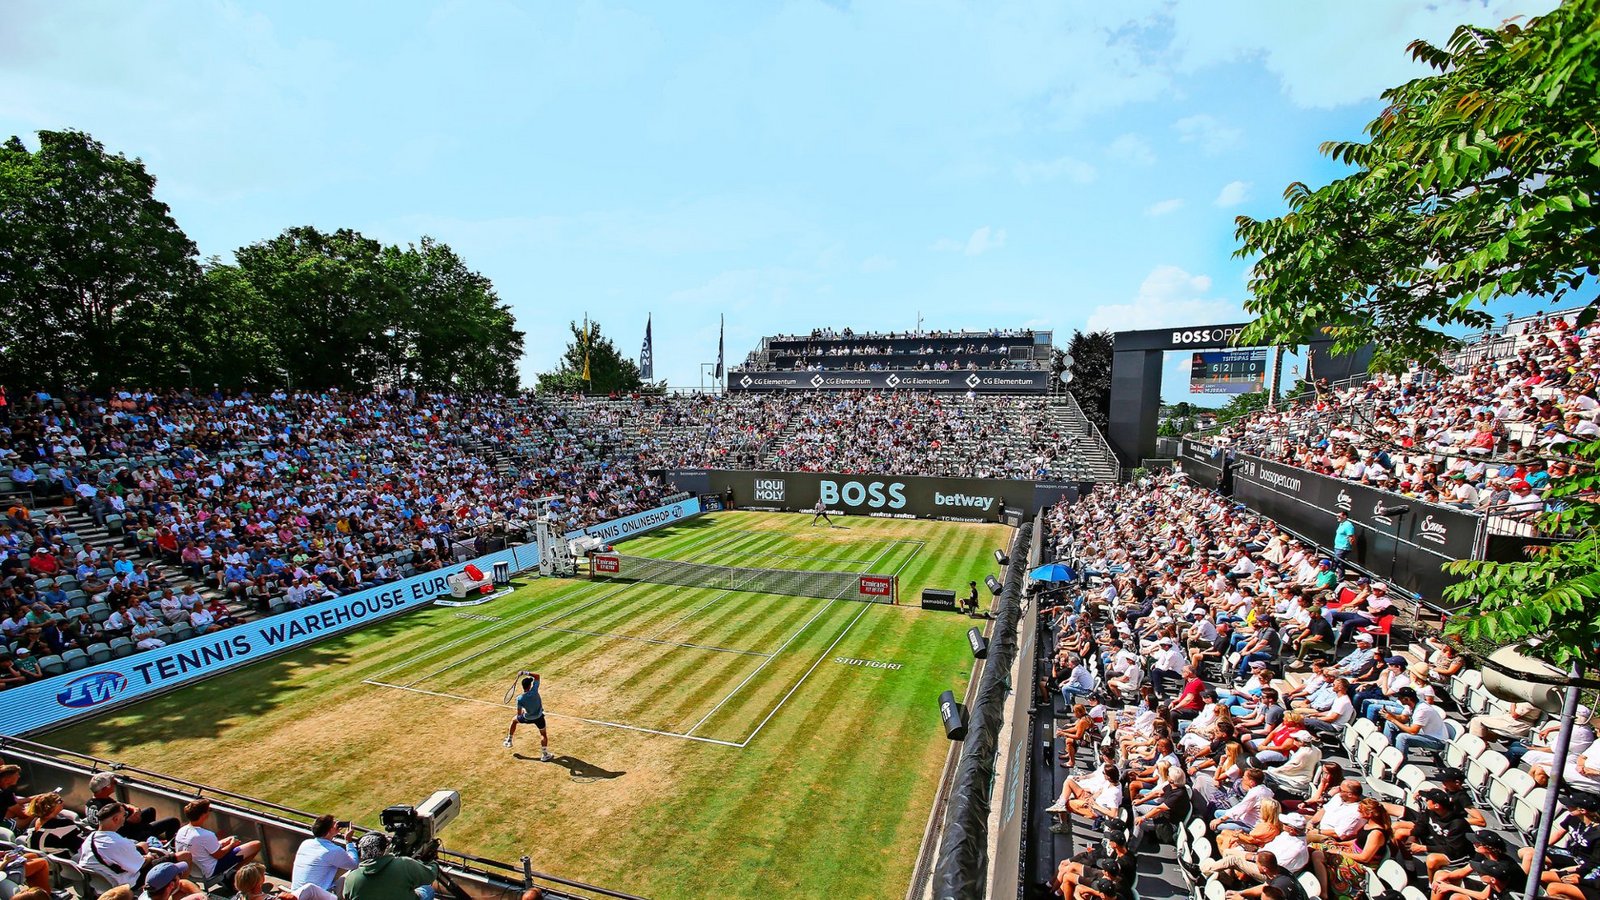 Der 5000 Fans fassende Centre Court ist Schauplatz des Stuttgarter Weissenhof-Turniers.Foto: Pressefoto Baumann